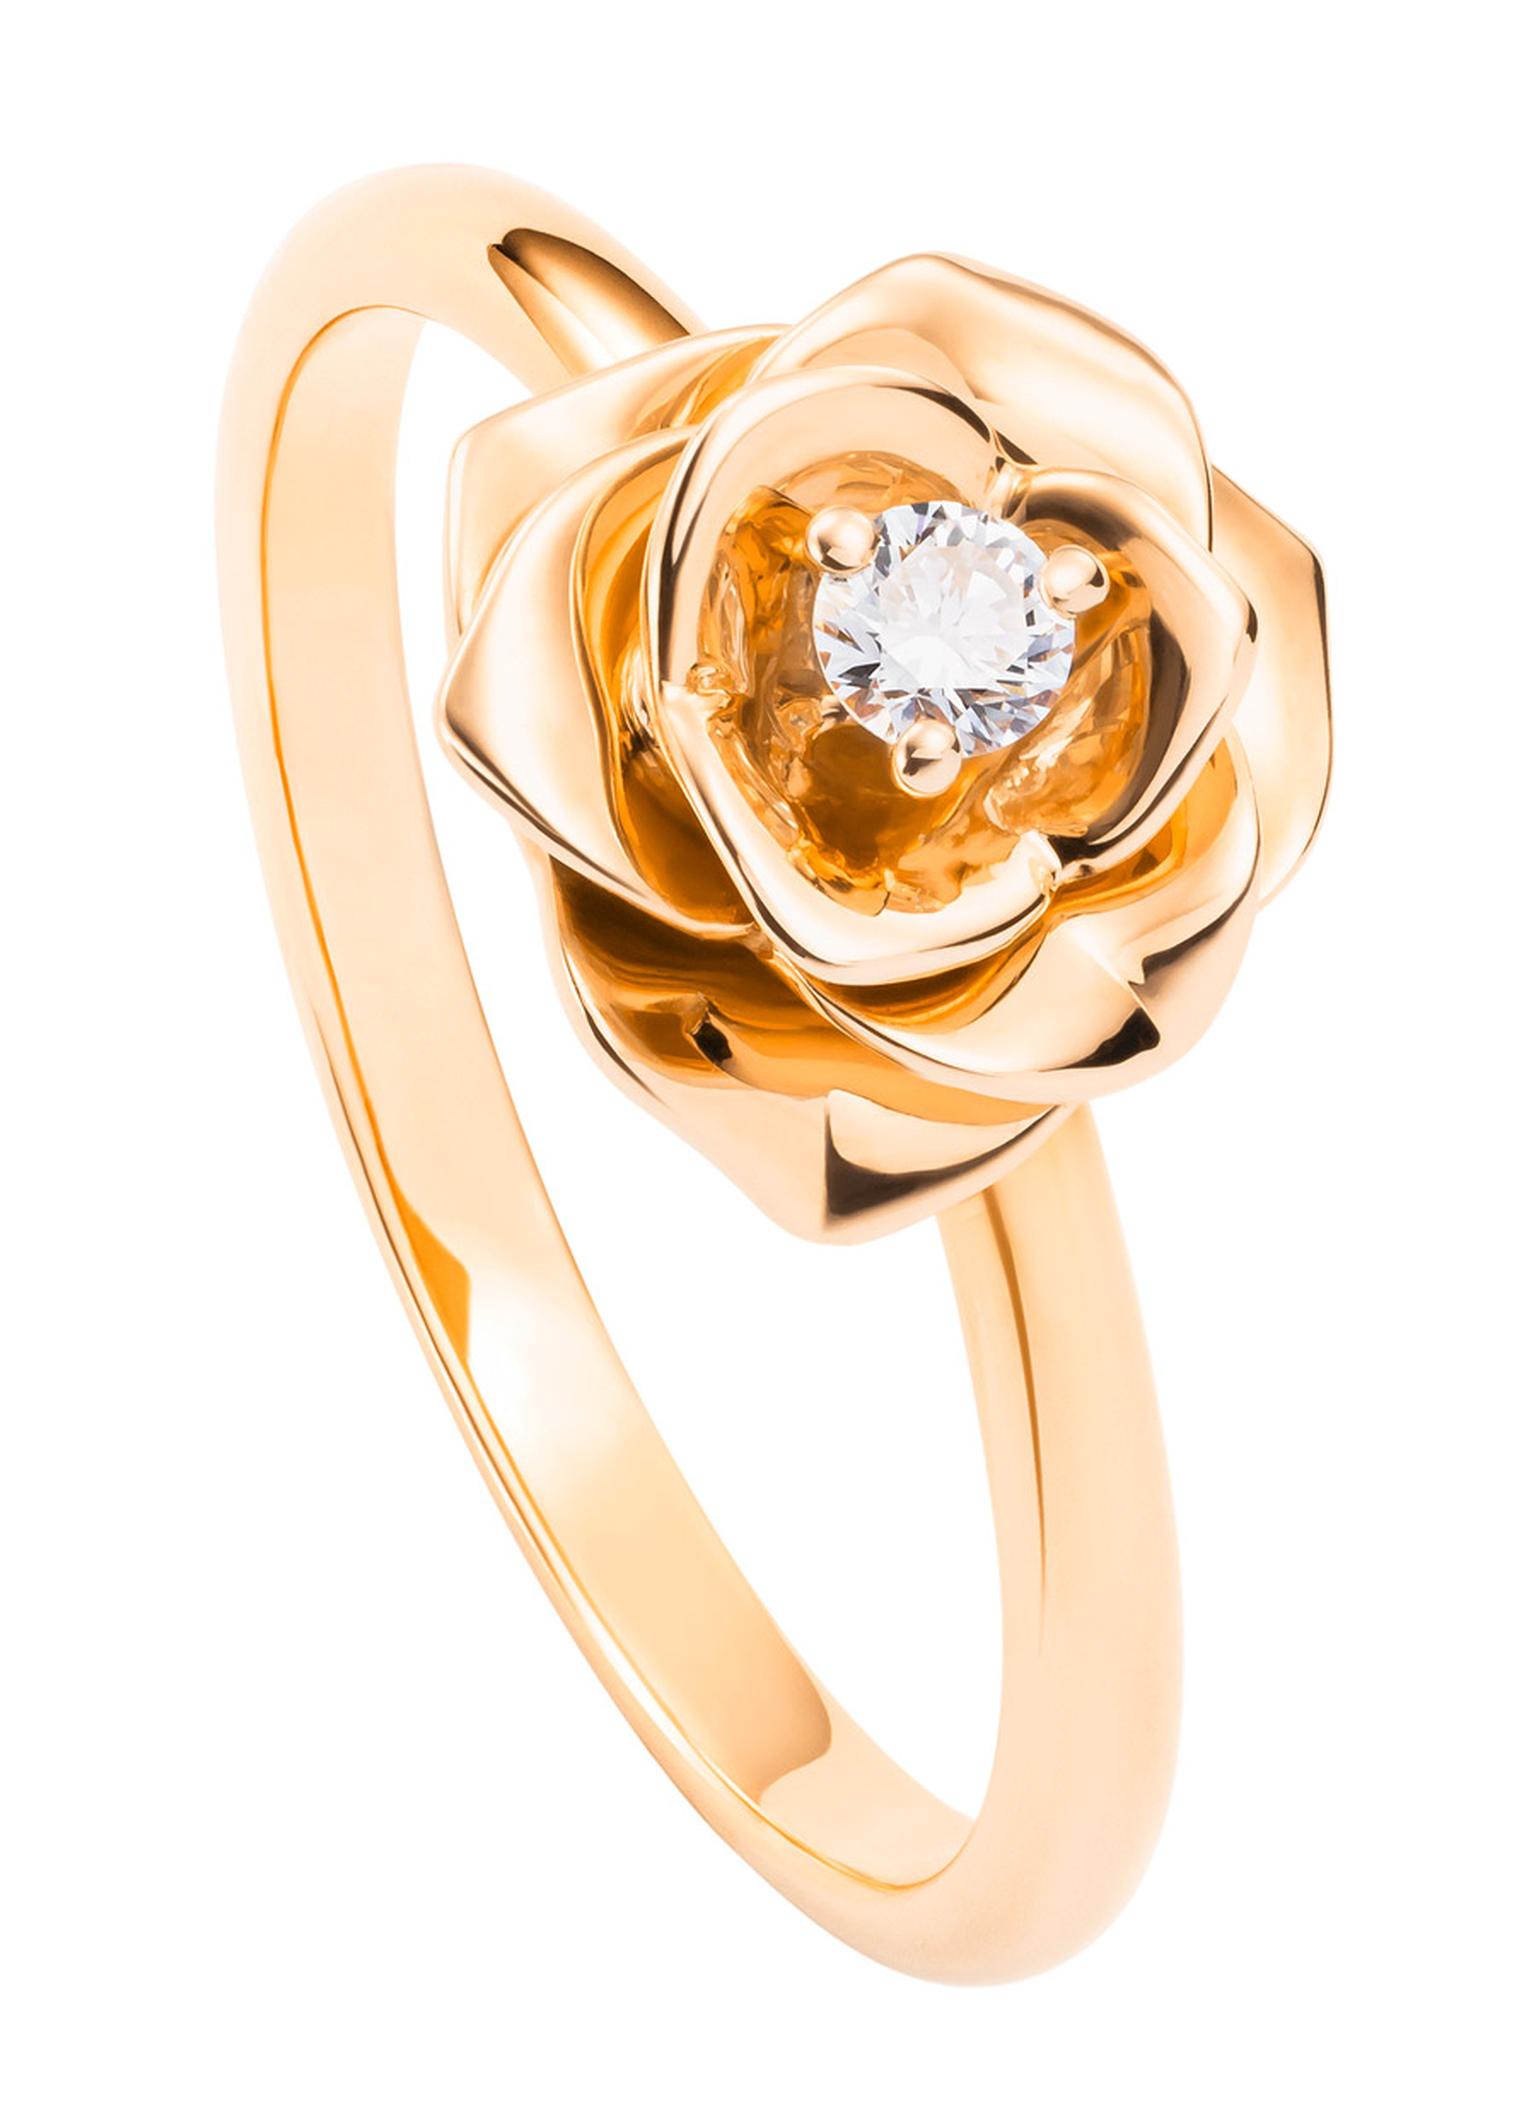 Изделия из золота с бриллиантами. Золотое кольцо Piaget. Ювелирные украшения Piaget Rose. Piaget ювелирные украшения Rose Ring.